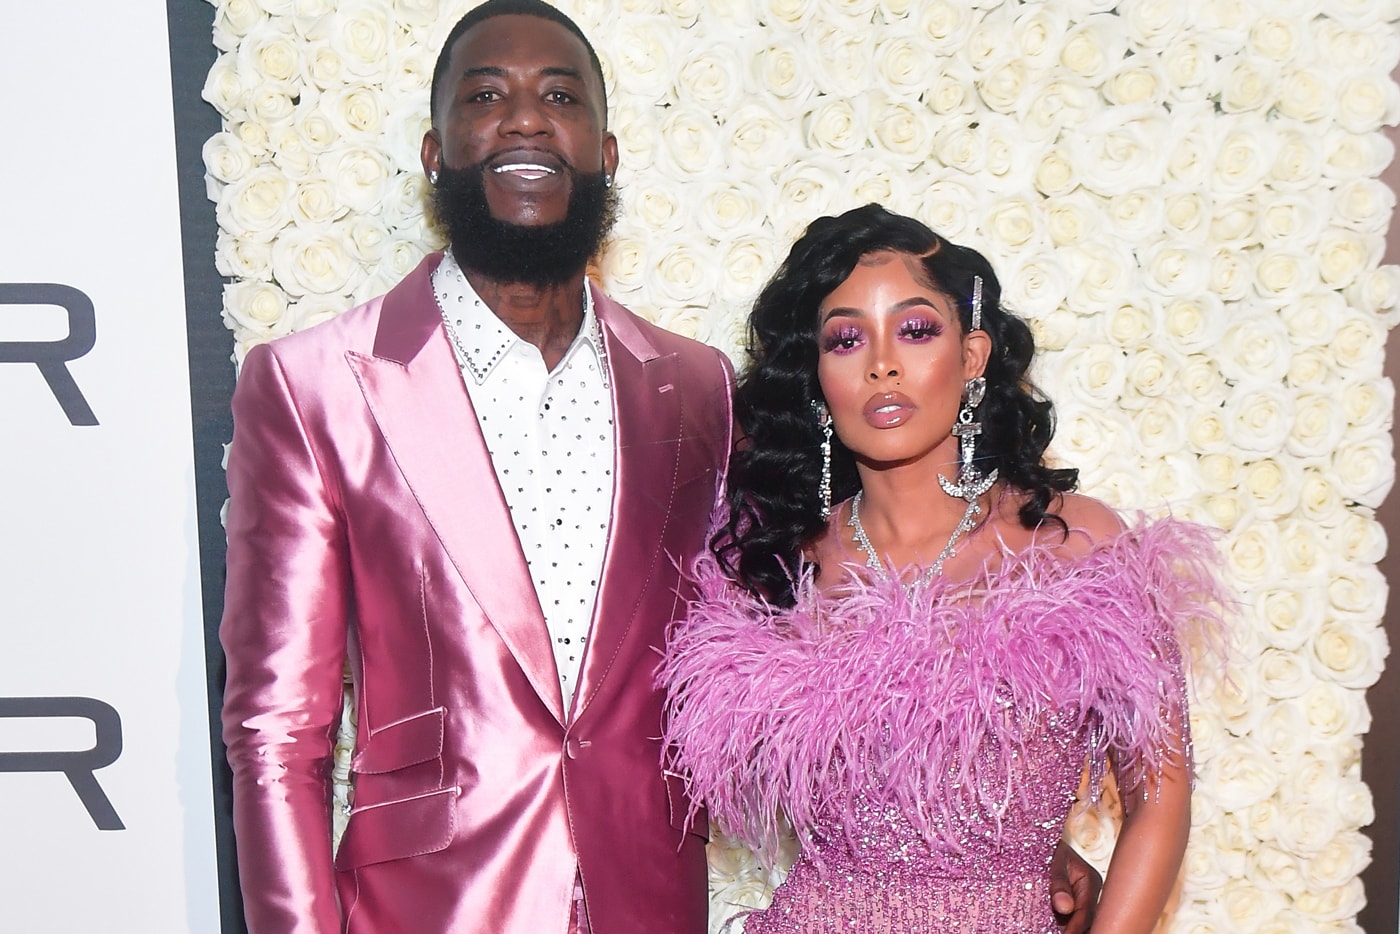 Gucci Mane Keyshia Ka'oir Wedding Dress Code Jhené Aiko Lil Yachty Big Sean 2 Chainz Karrueche outfits suit tux dress diamonds jewelry